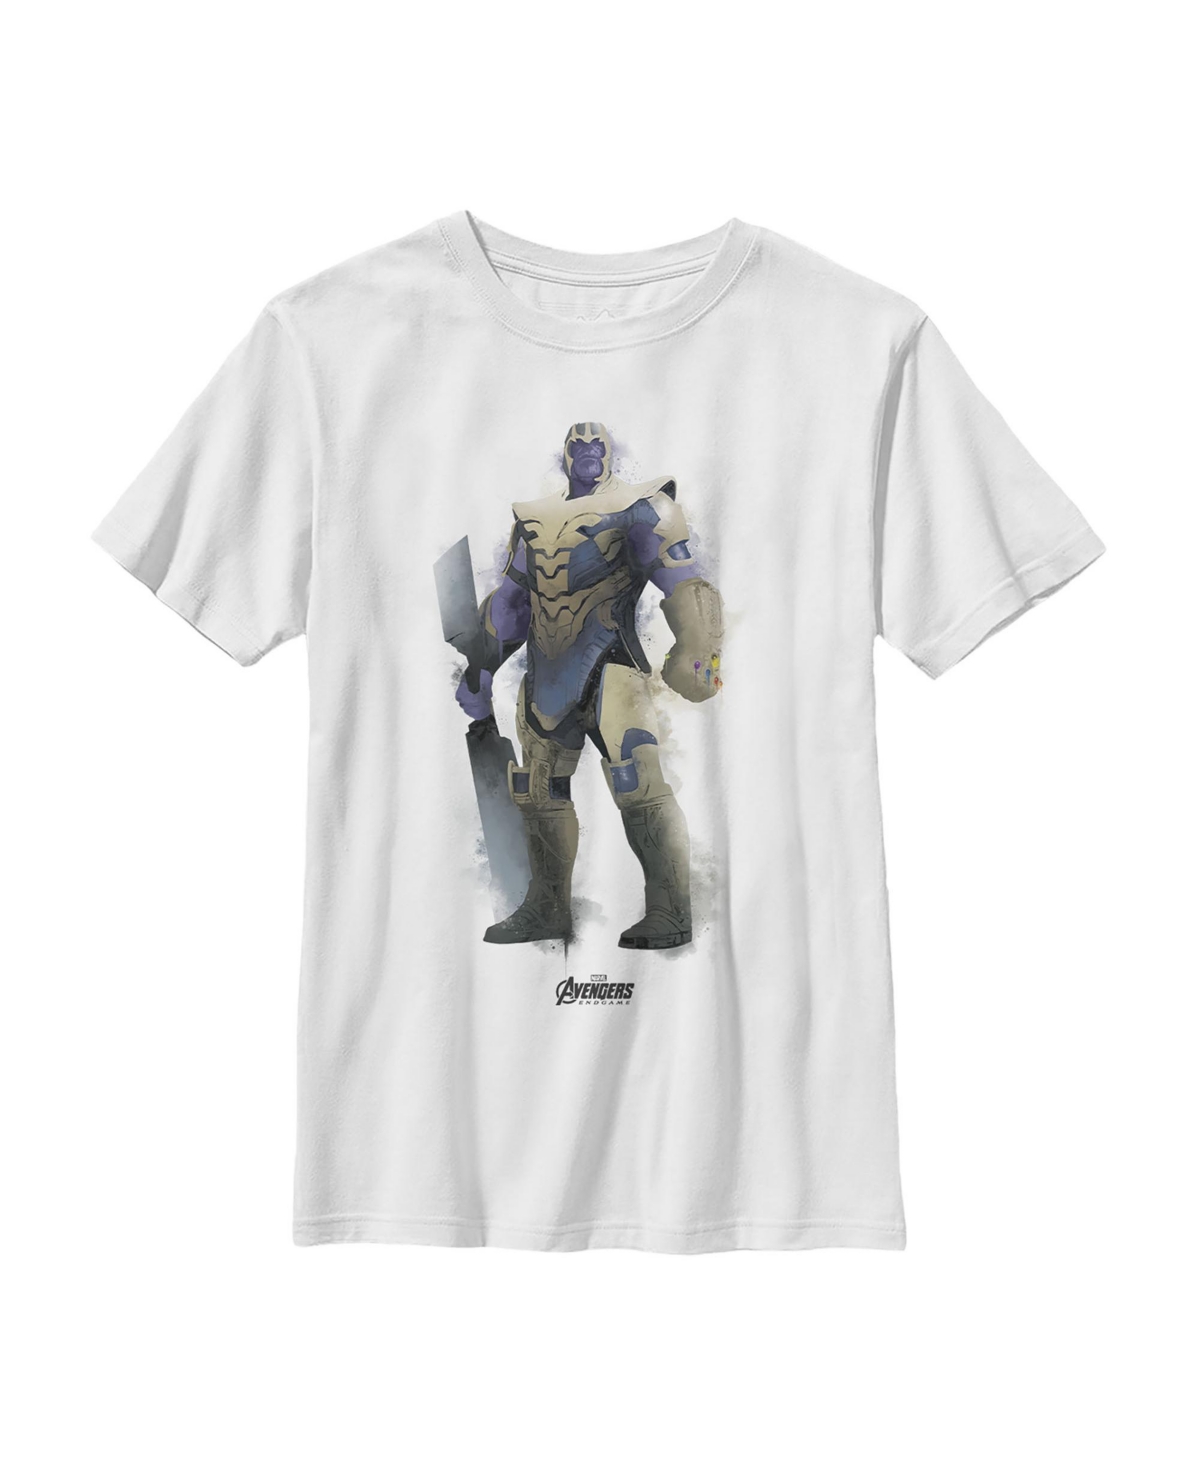 Boy's Marvel Avengers: Endgame Thanos Spray Paint Child T-Shirt - White